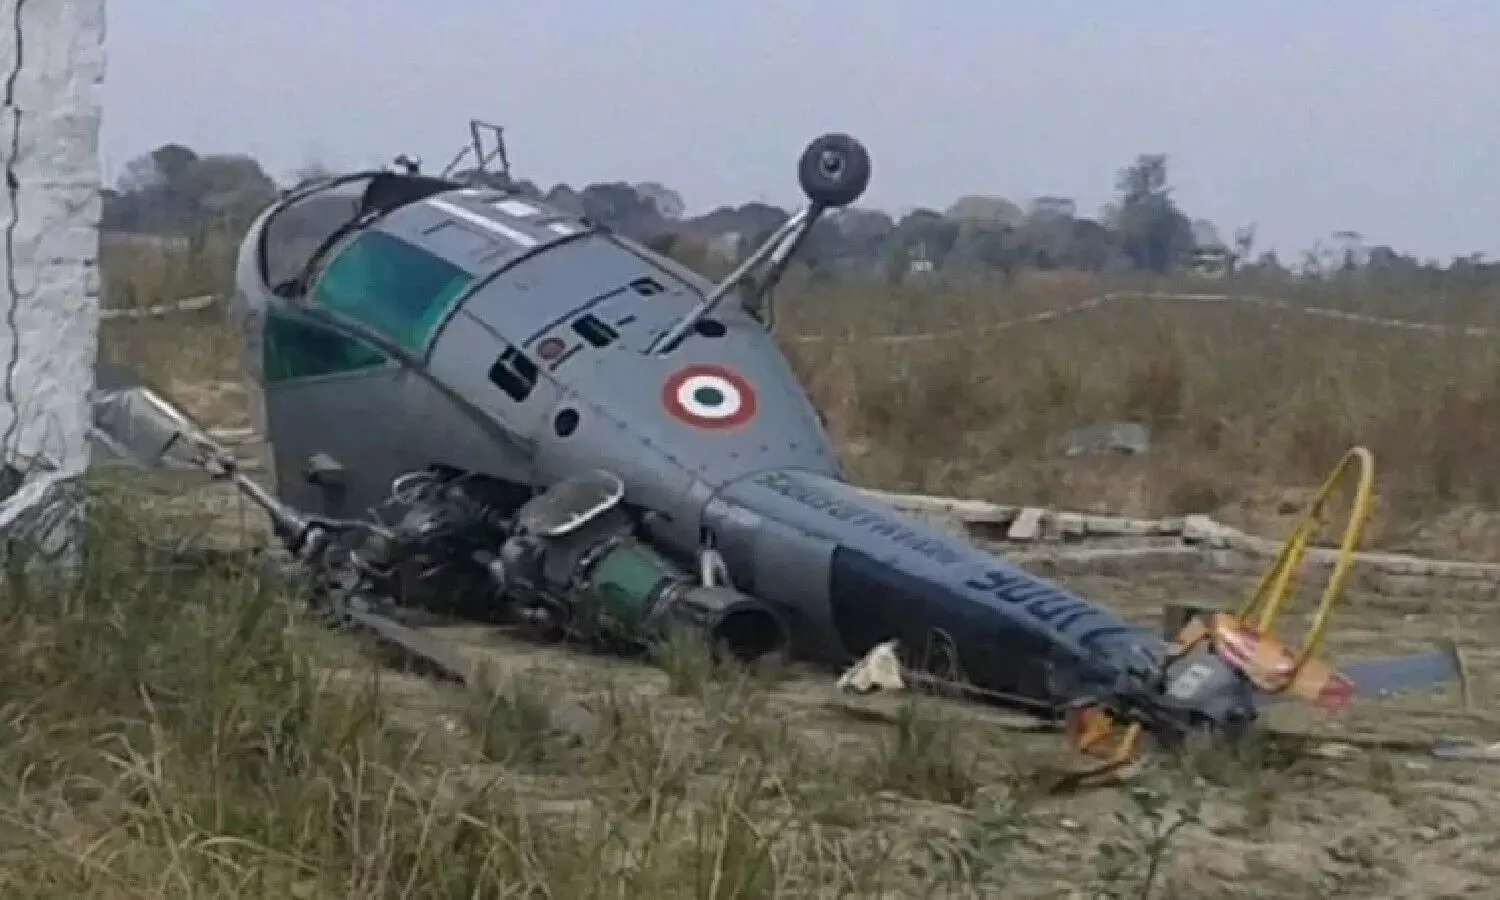 Arunachal Pradesh : अरूणाचल प्रदेश में बड़ा हादसा, क्रैश हुआ वायुसेना का हेलीकॉप्टर, उड़ान भरने पर हुई दुर्घटना